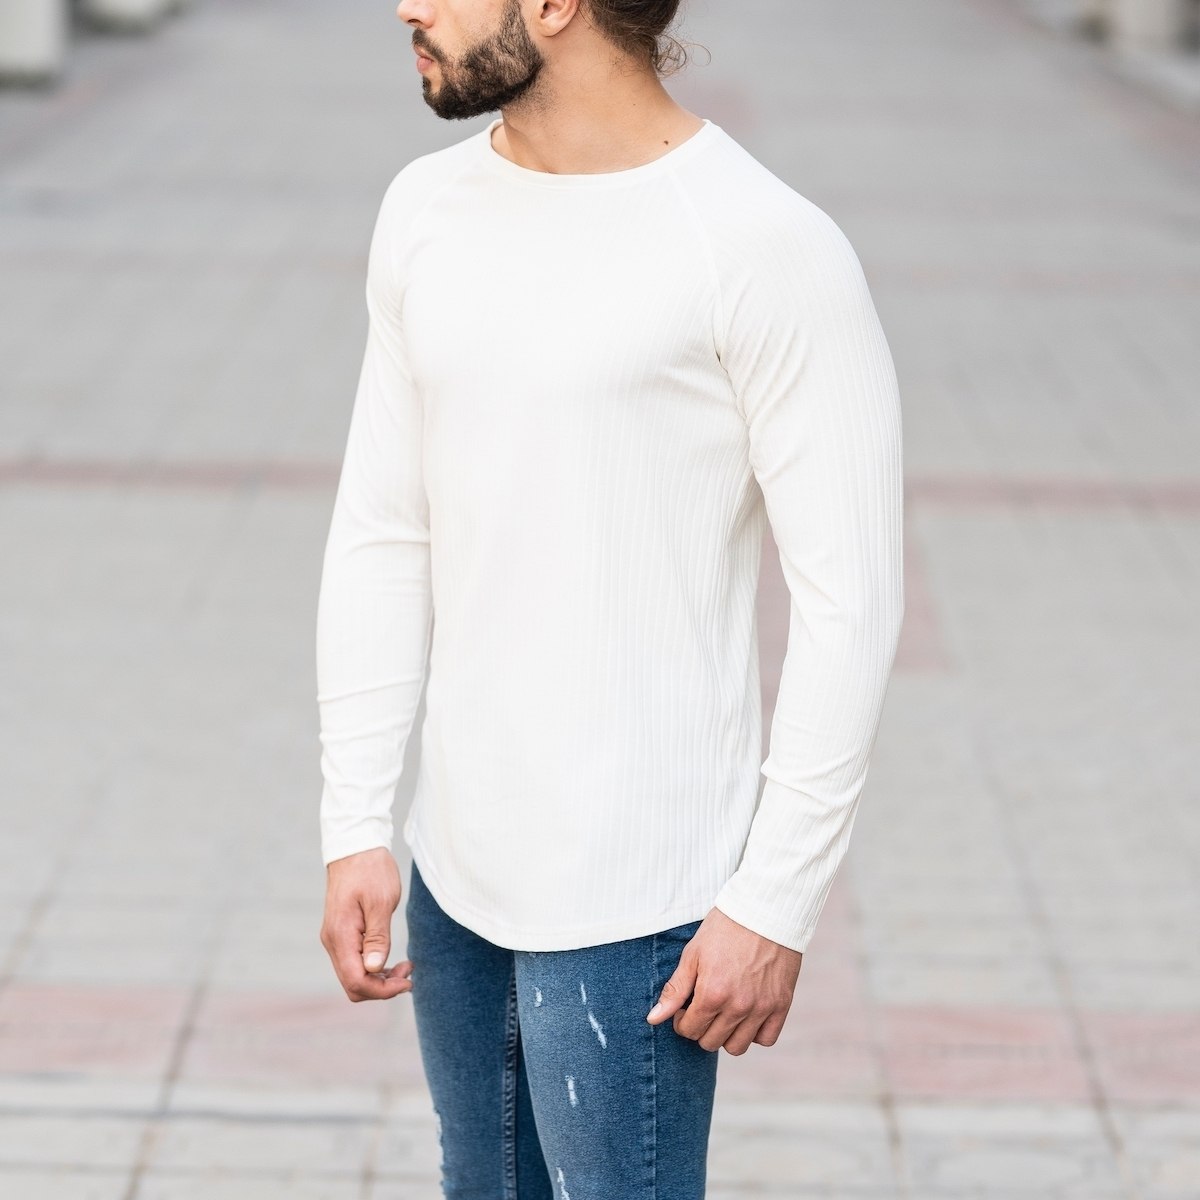 White Sweatshirt With Stripe Details